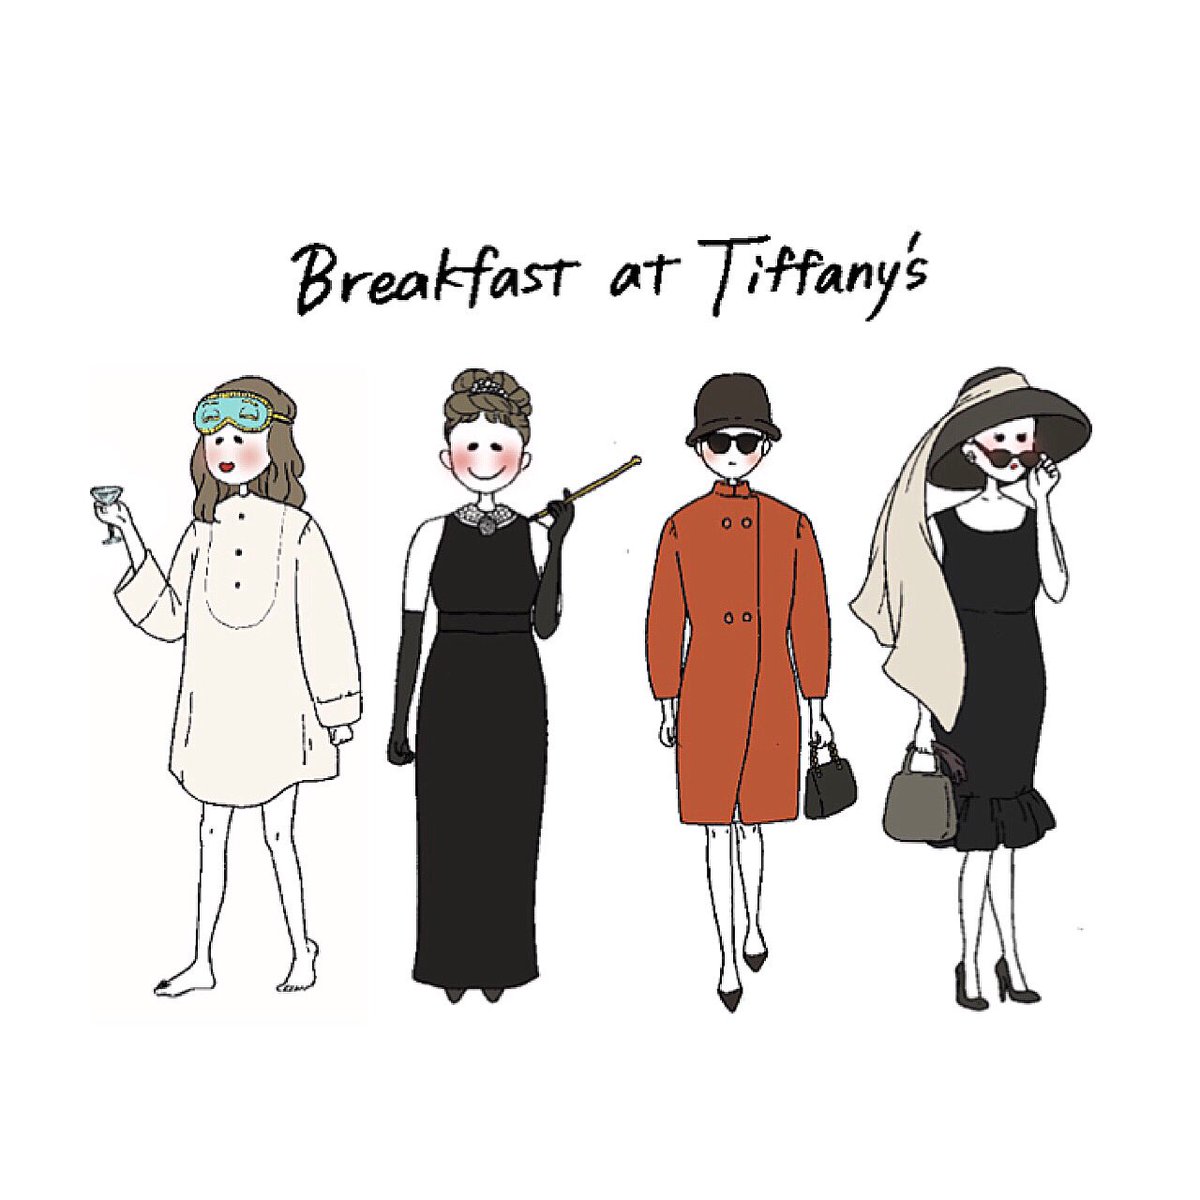 ট ইট র とまと ティファニーで朝食を この映画見ると女らしく生きたいなと思う イラスト イラストレーター 絵描きさんと繋がりたい オードリーヘップバーン ティファニーで朝食を